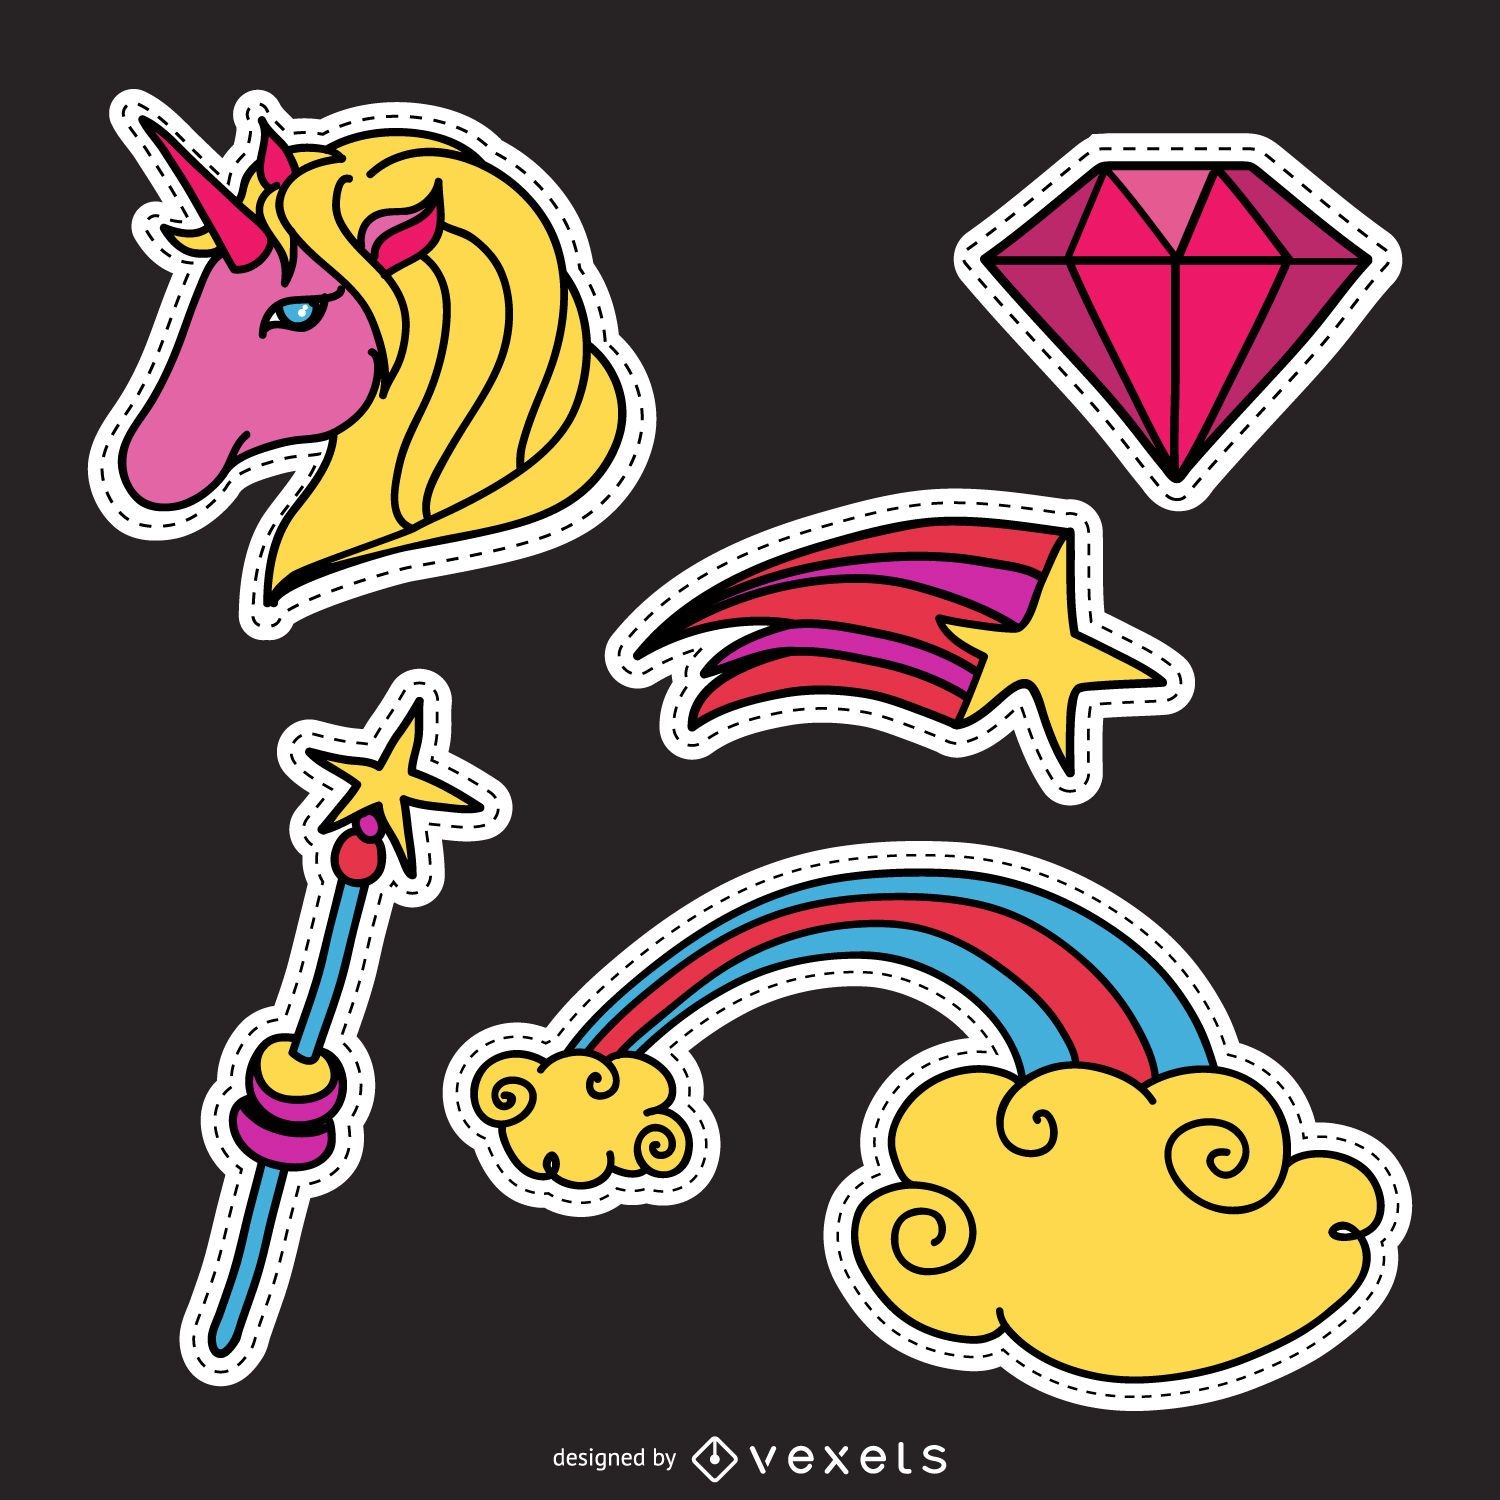 Unicorn magic patch set